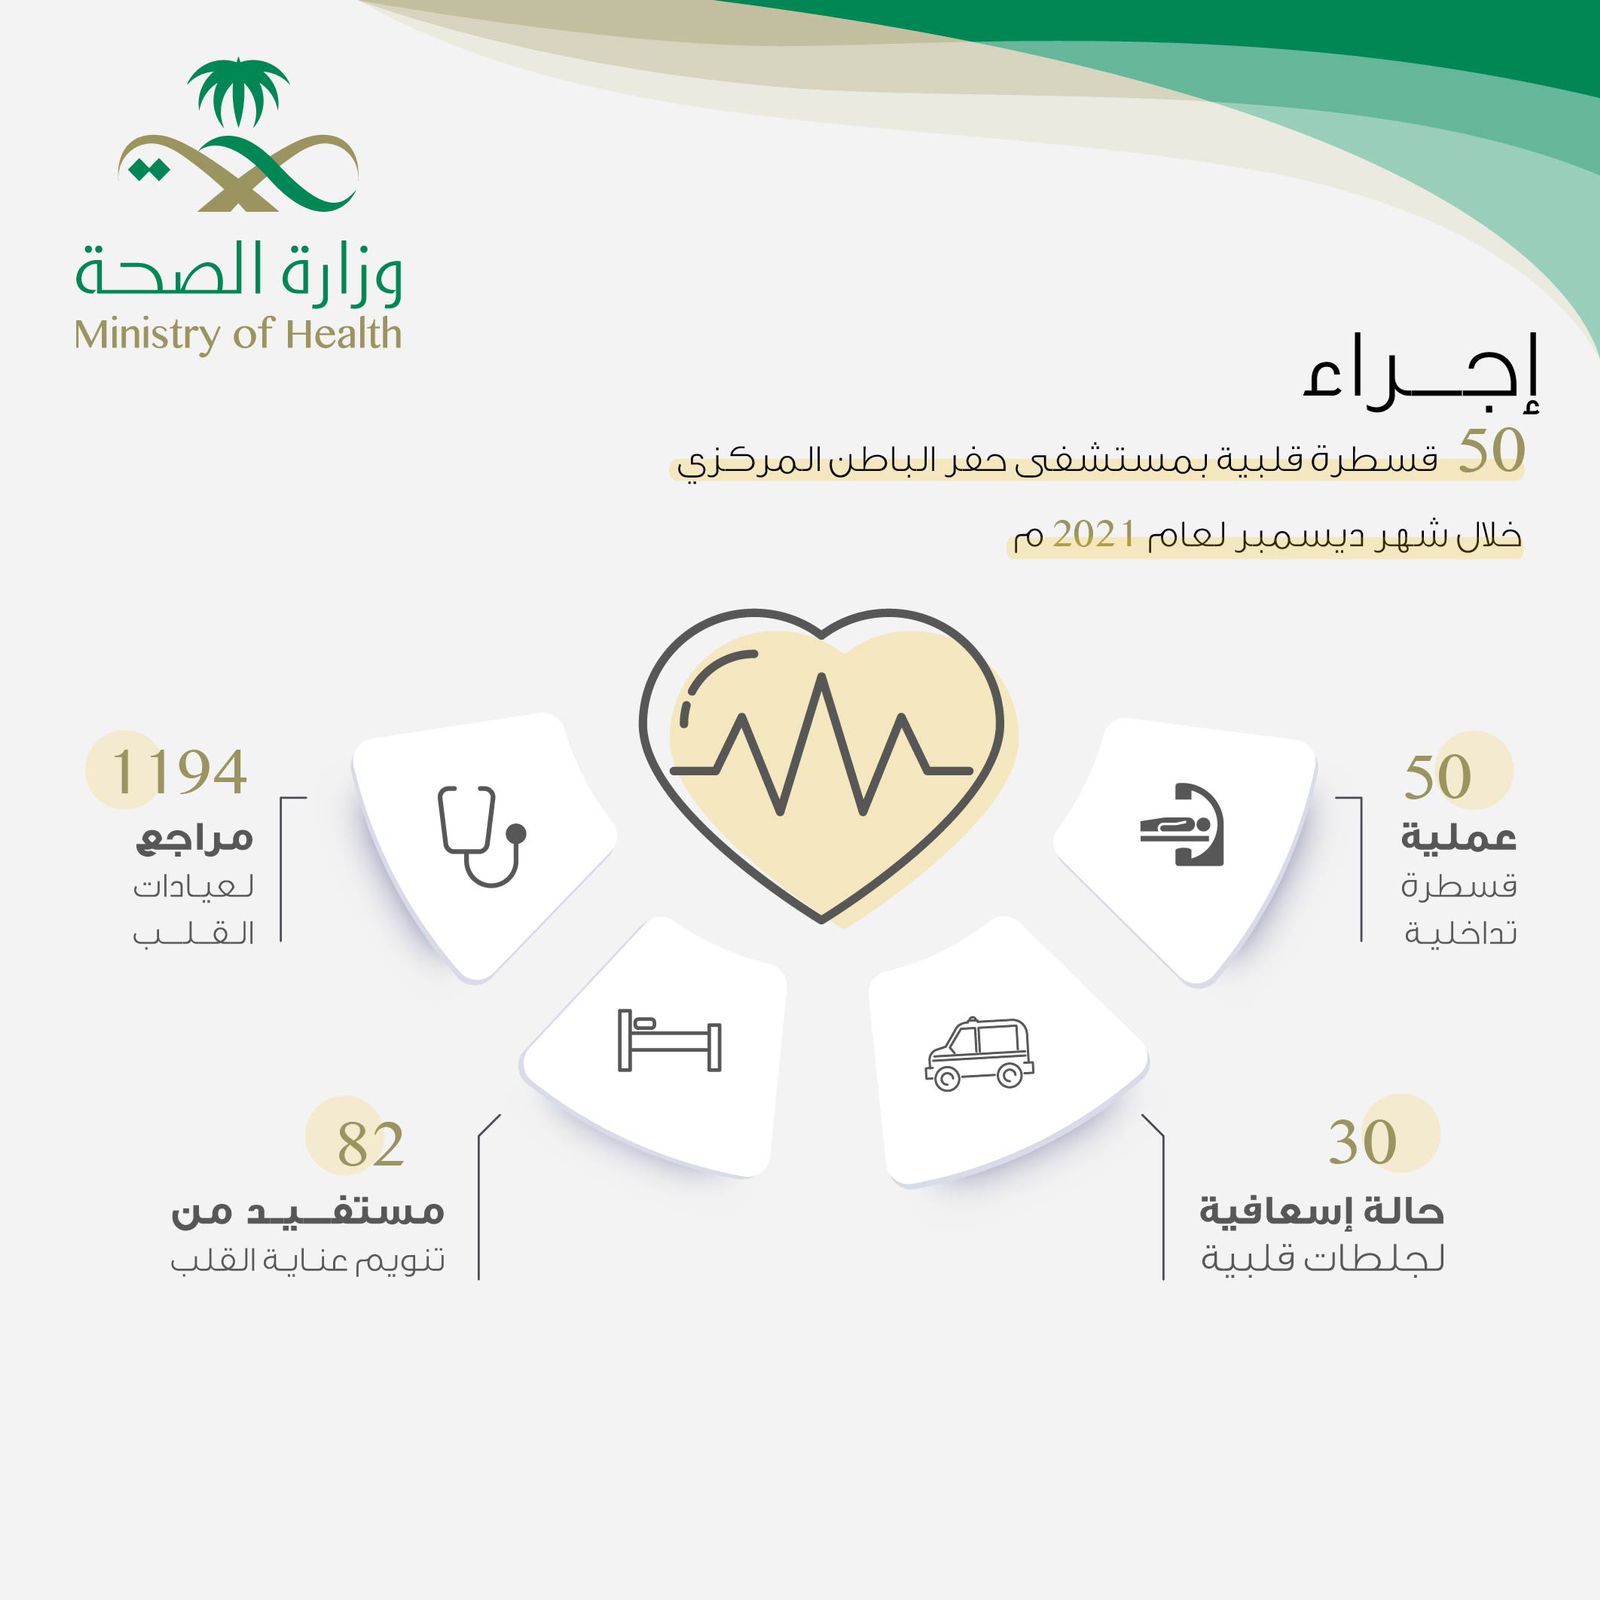 إجراء 50 قسطرة قلبية بمستشفى حفر الباطن المركزي خلال شهر ديسمبر لعام 2021م